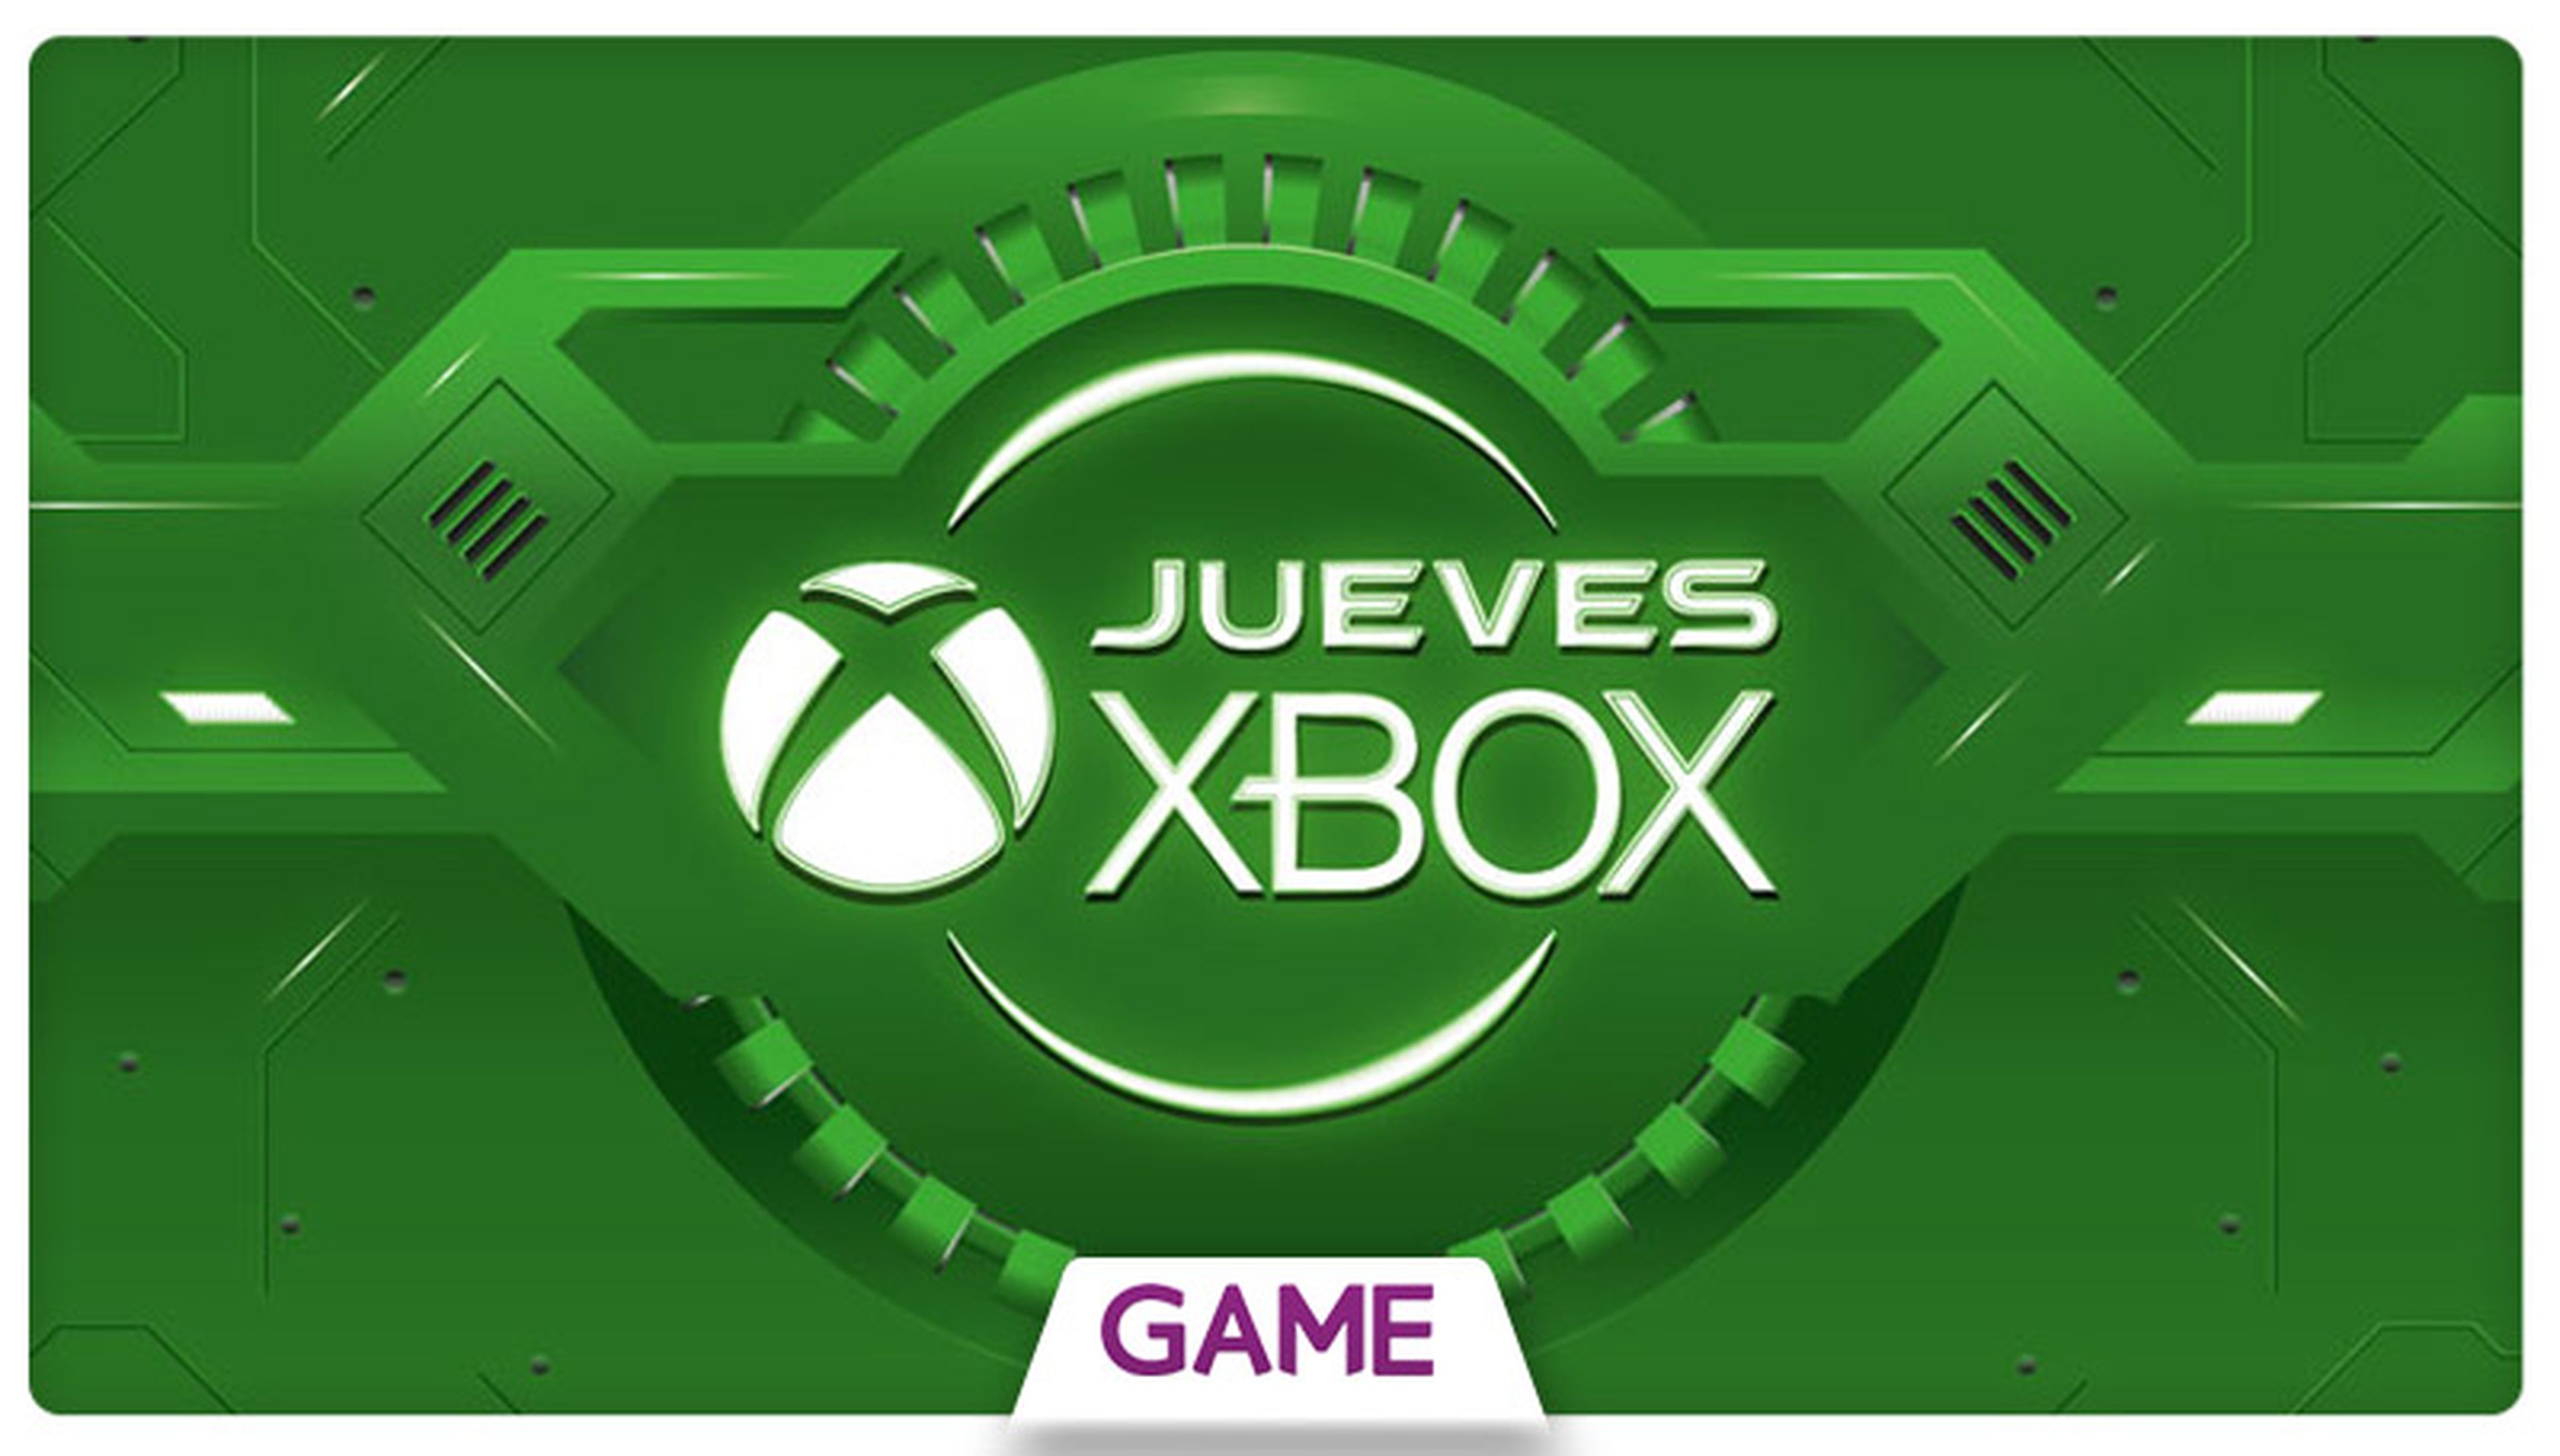 Jueves Xbox en GAME: Ofertas del 07/01/2016